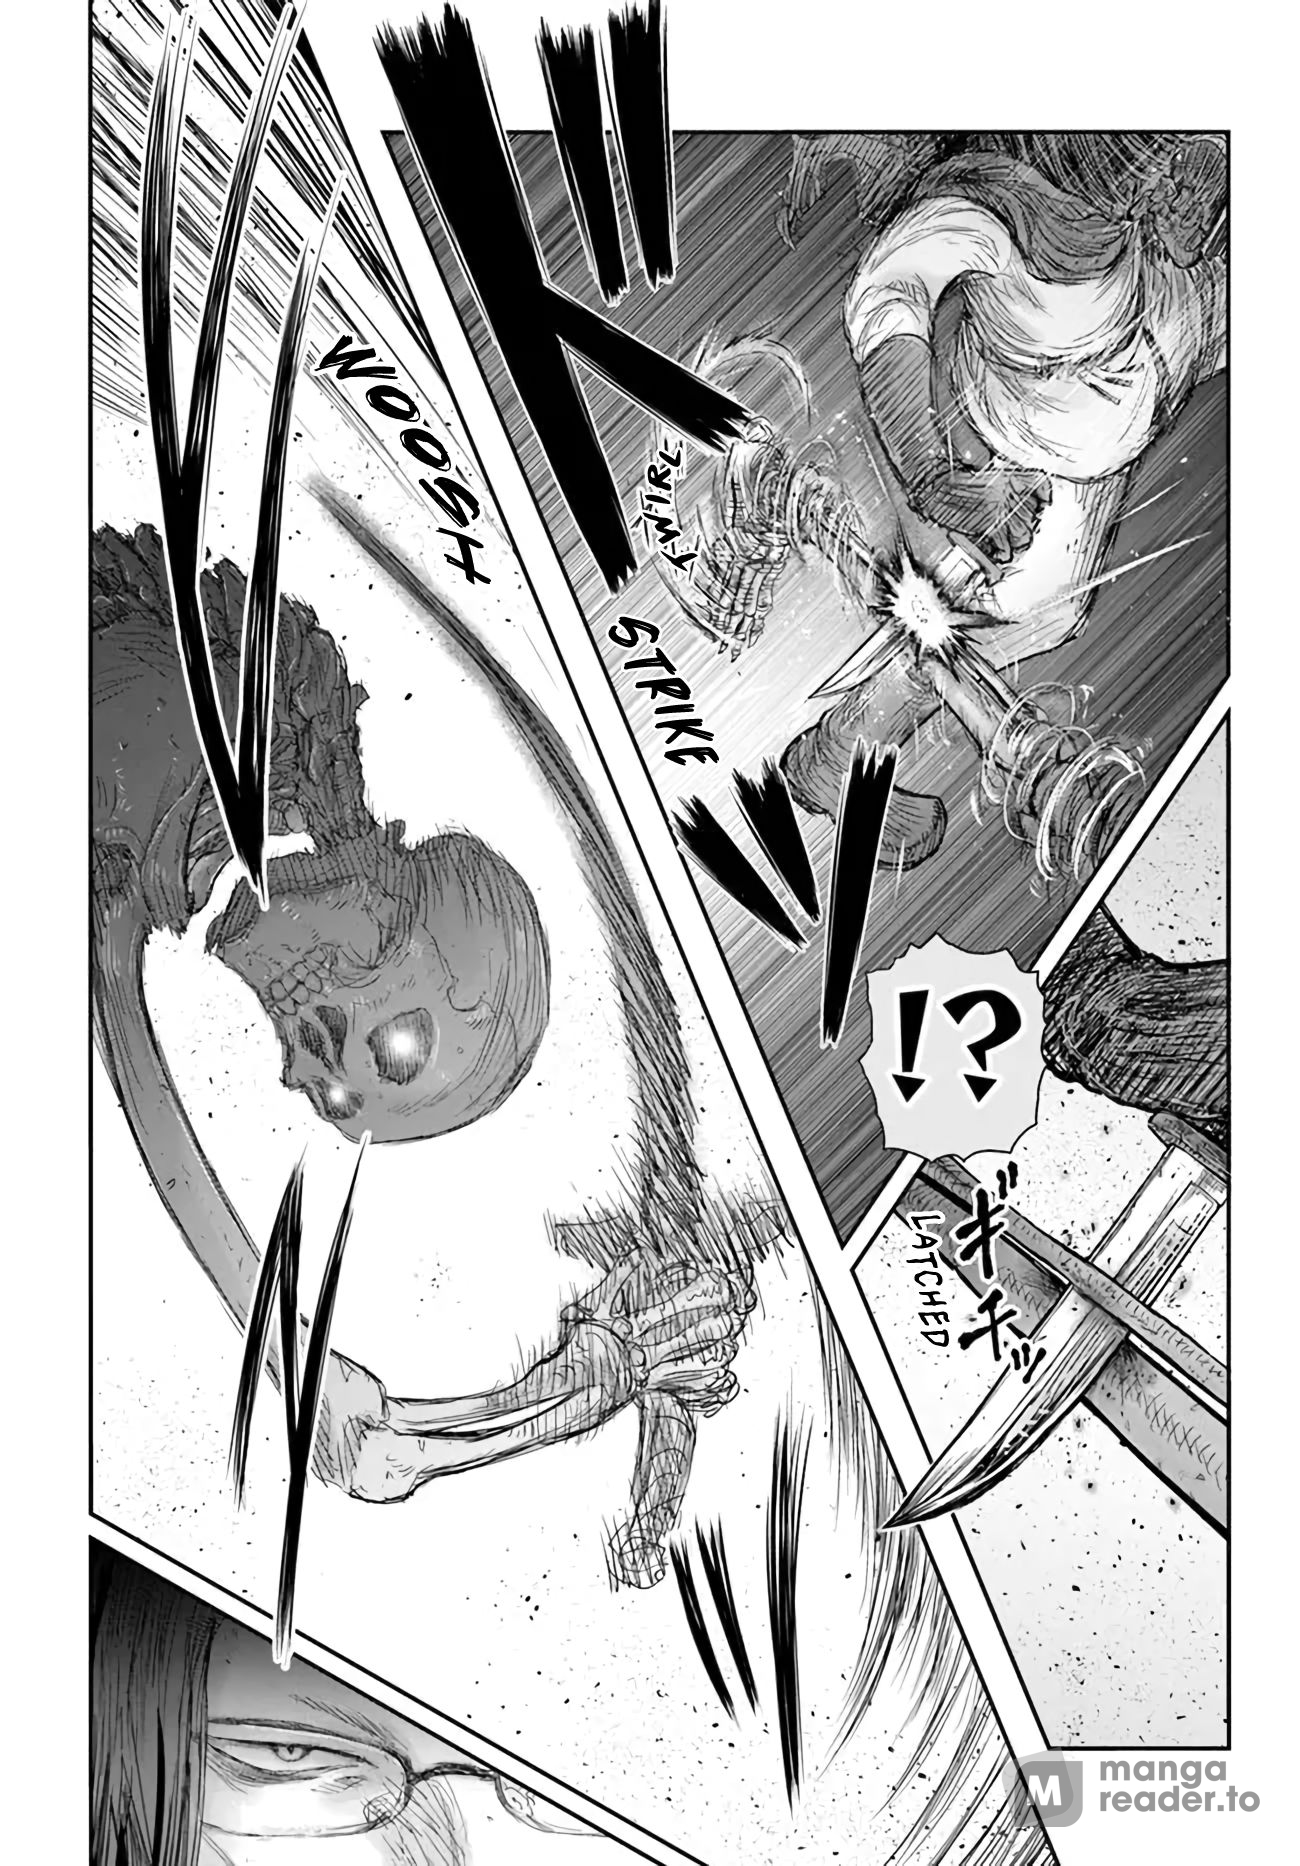 Isekai Ojisan, Chapter 42 - Isekai Ojisan Manga Online